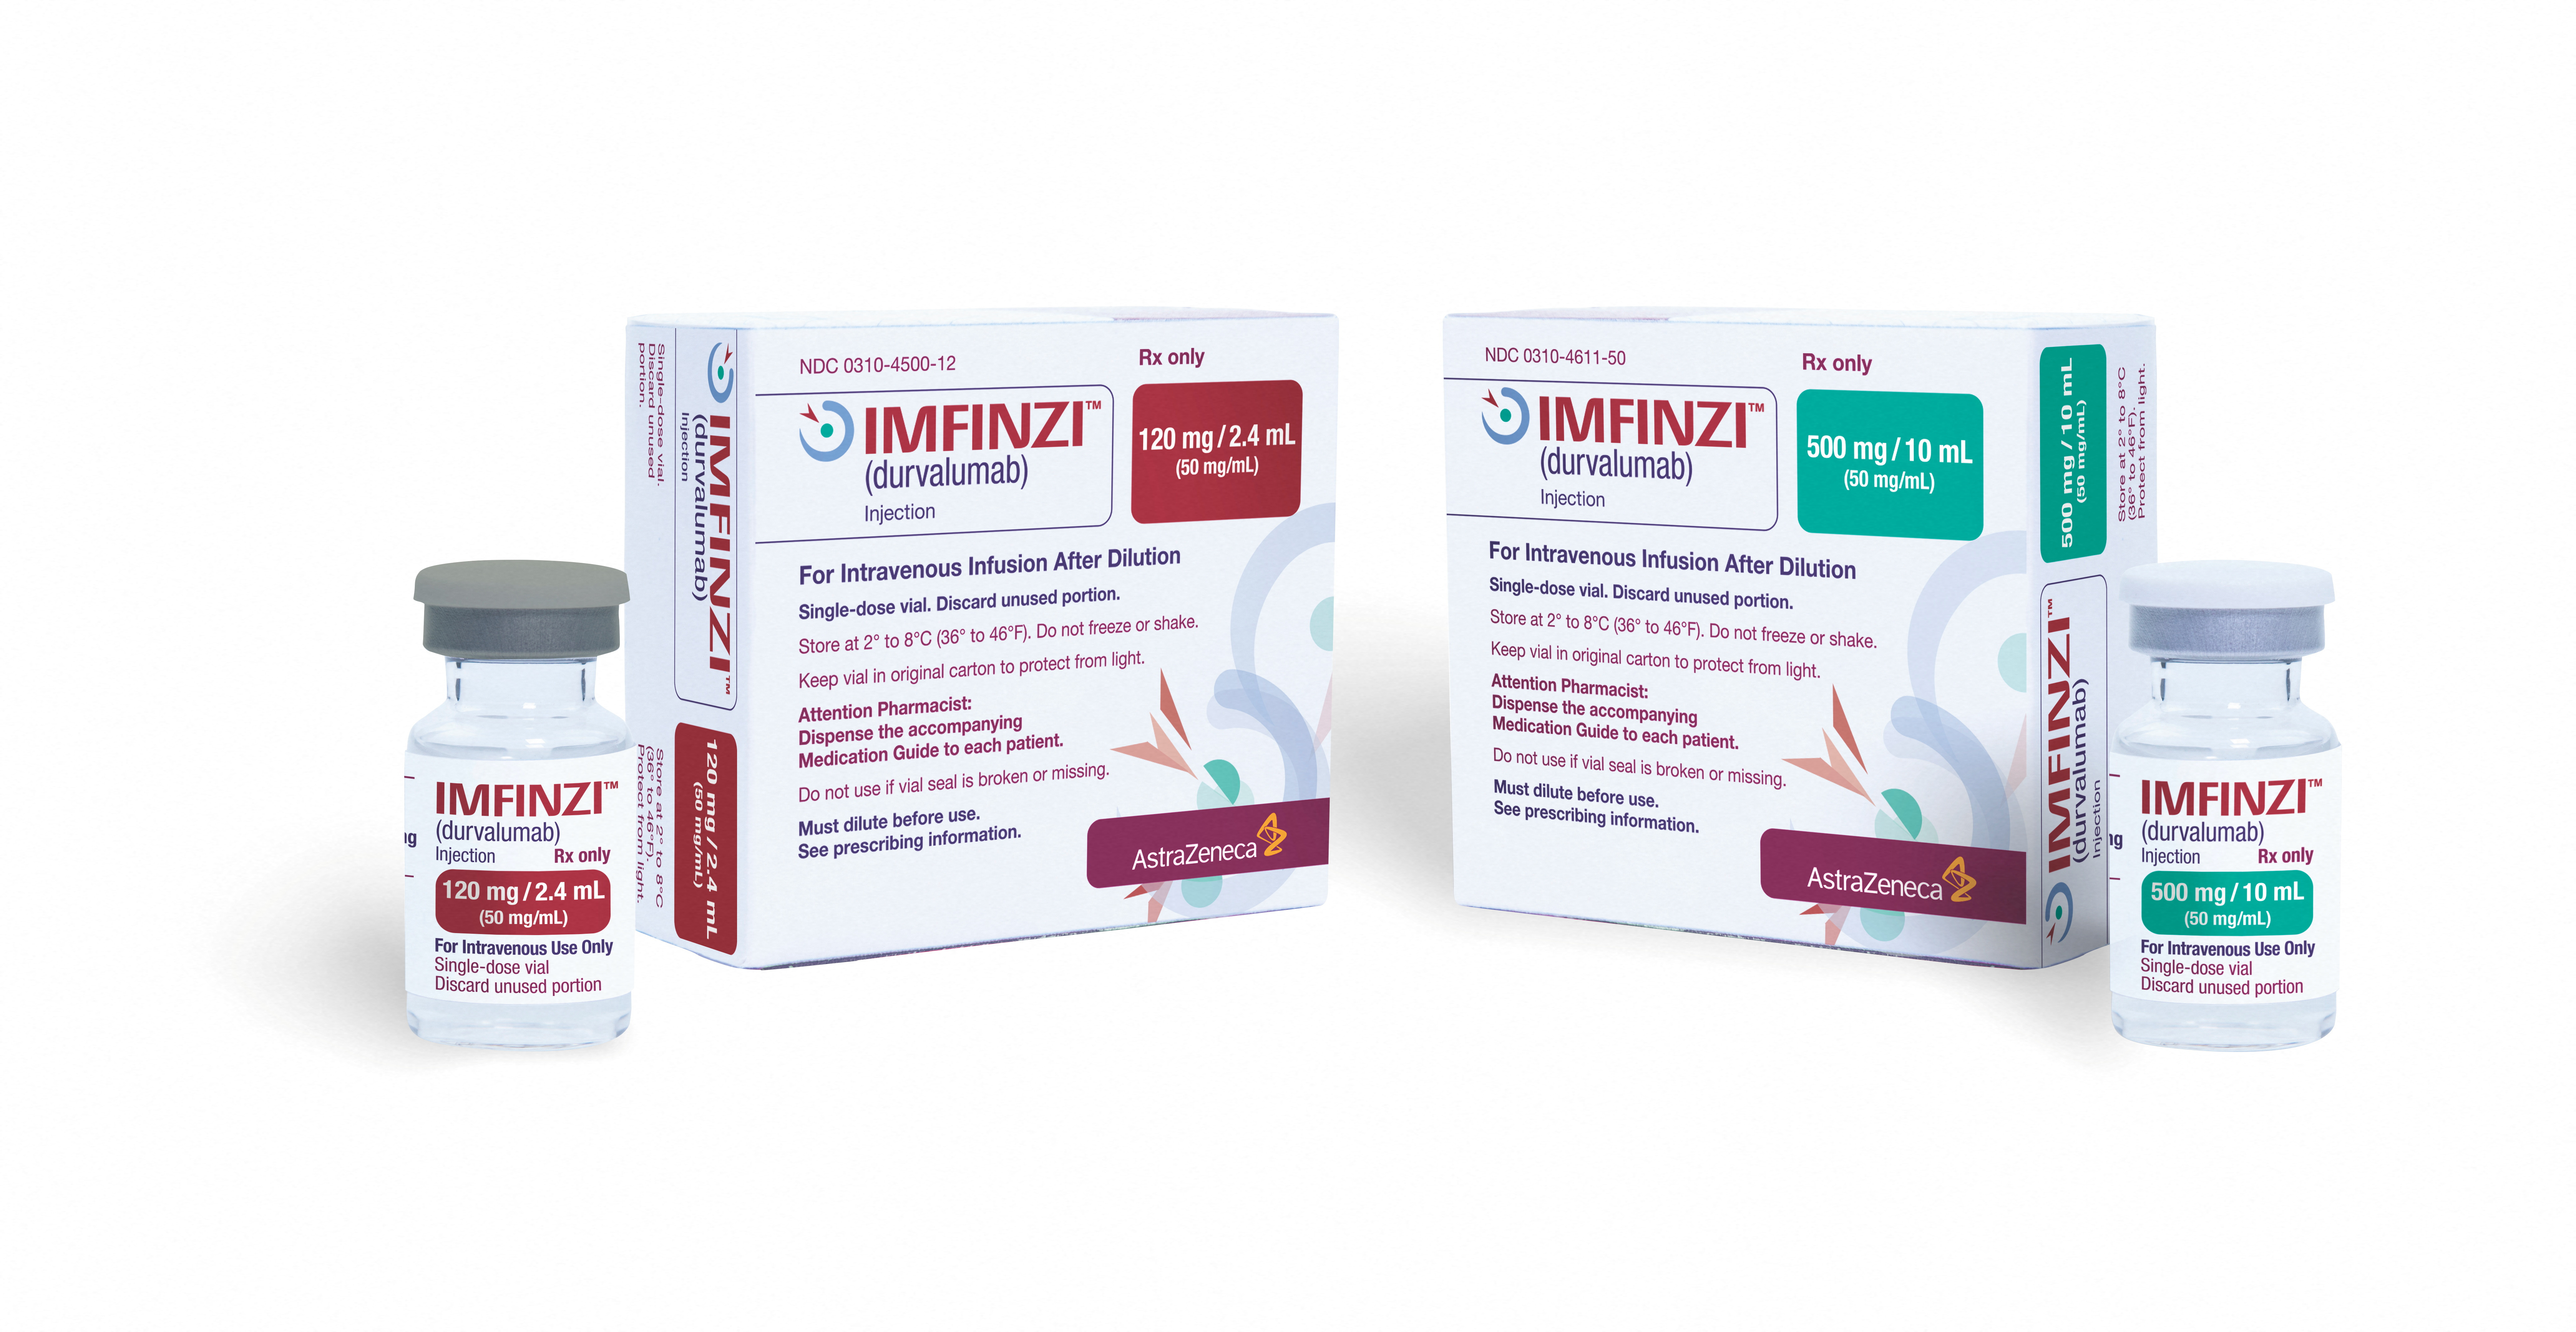 AstraZeneca's cancer medicine Imfinzi